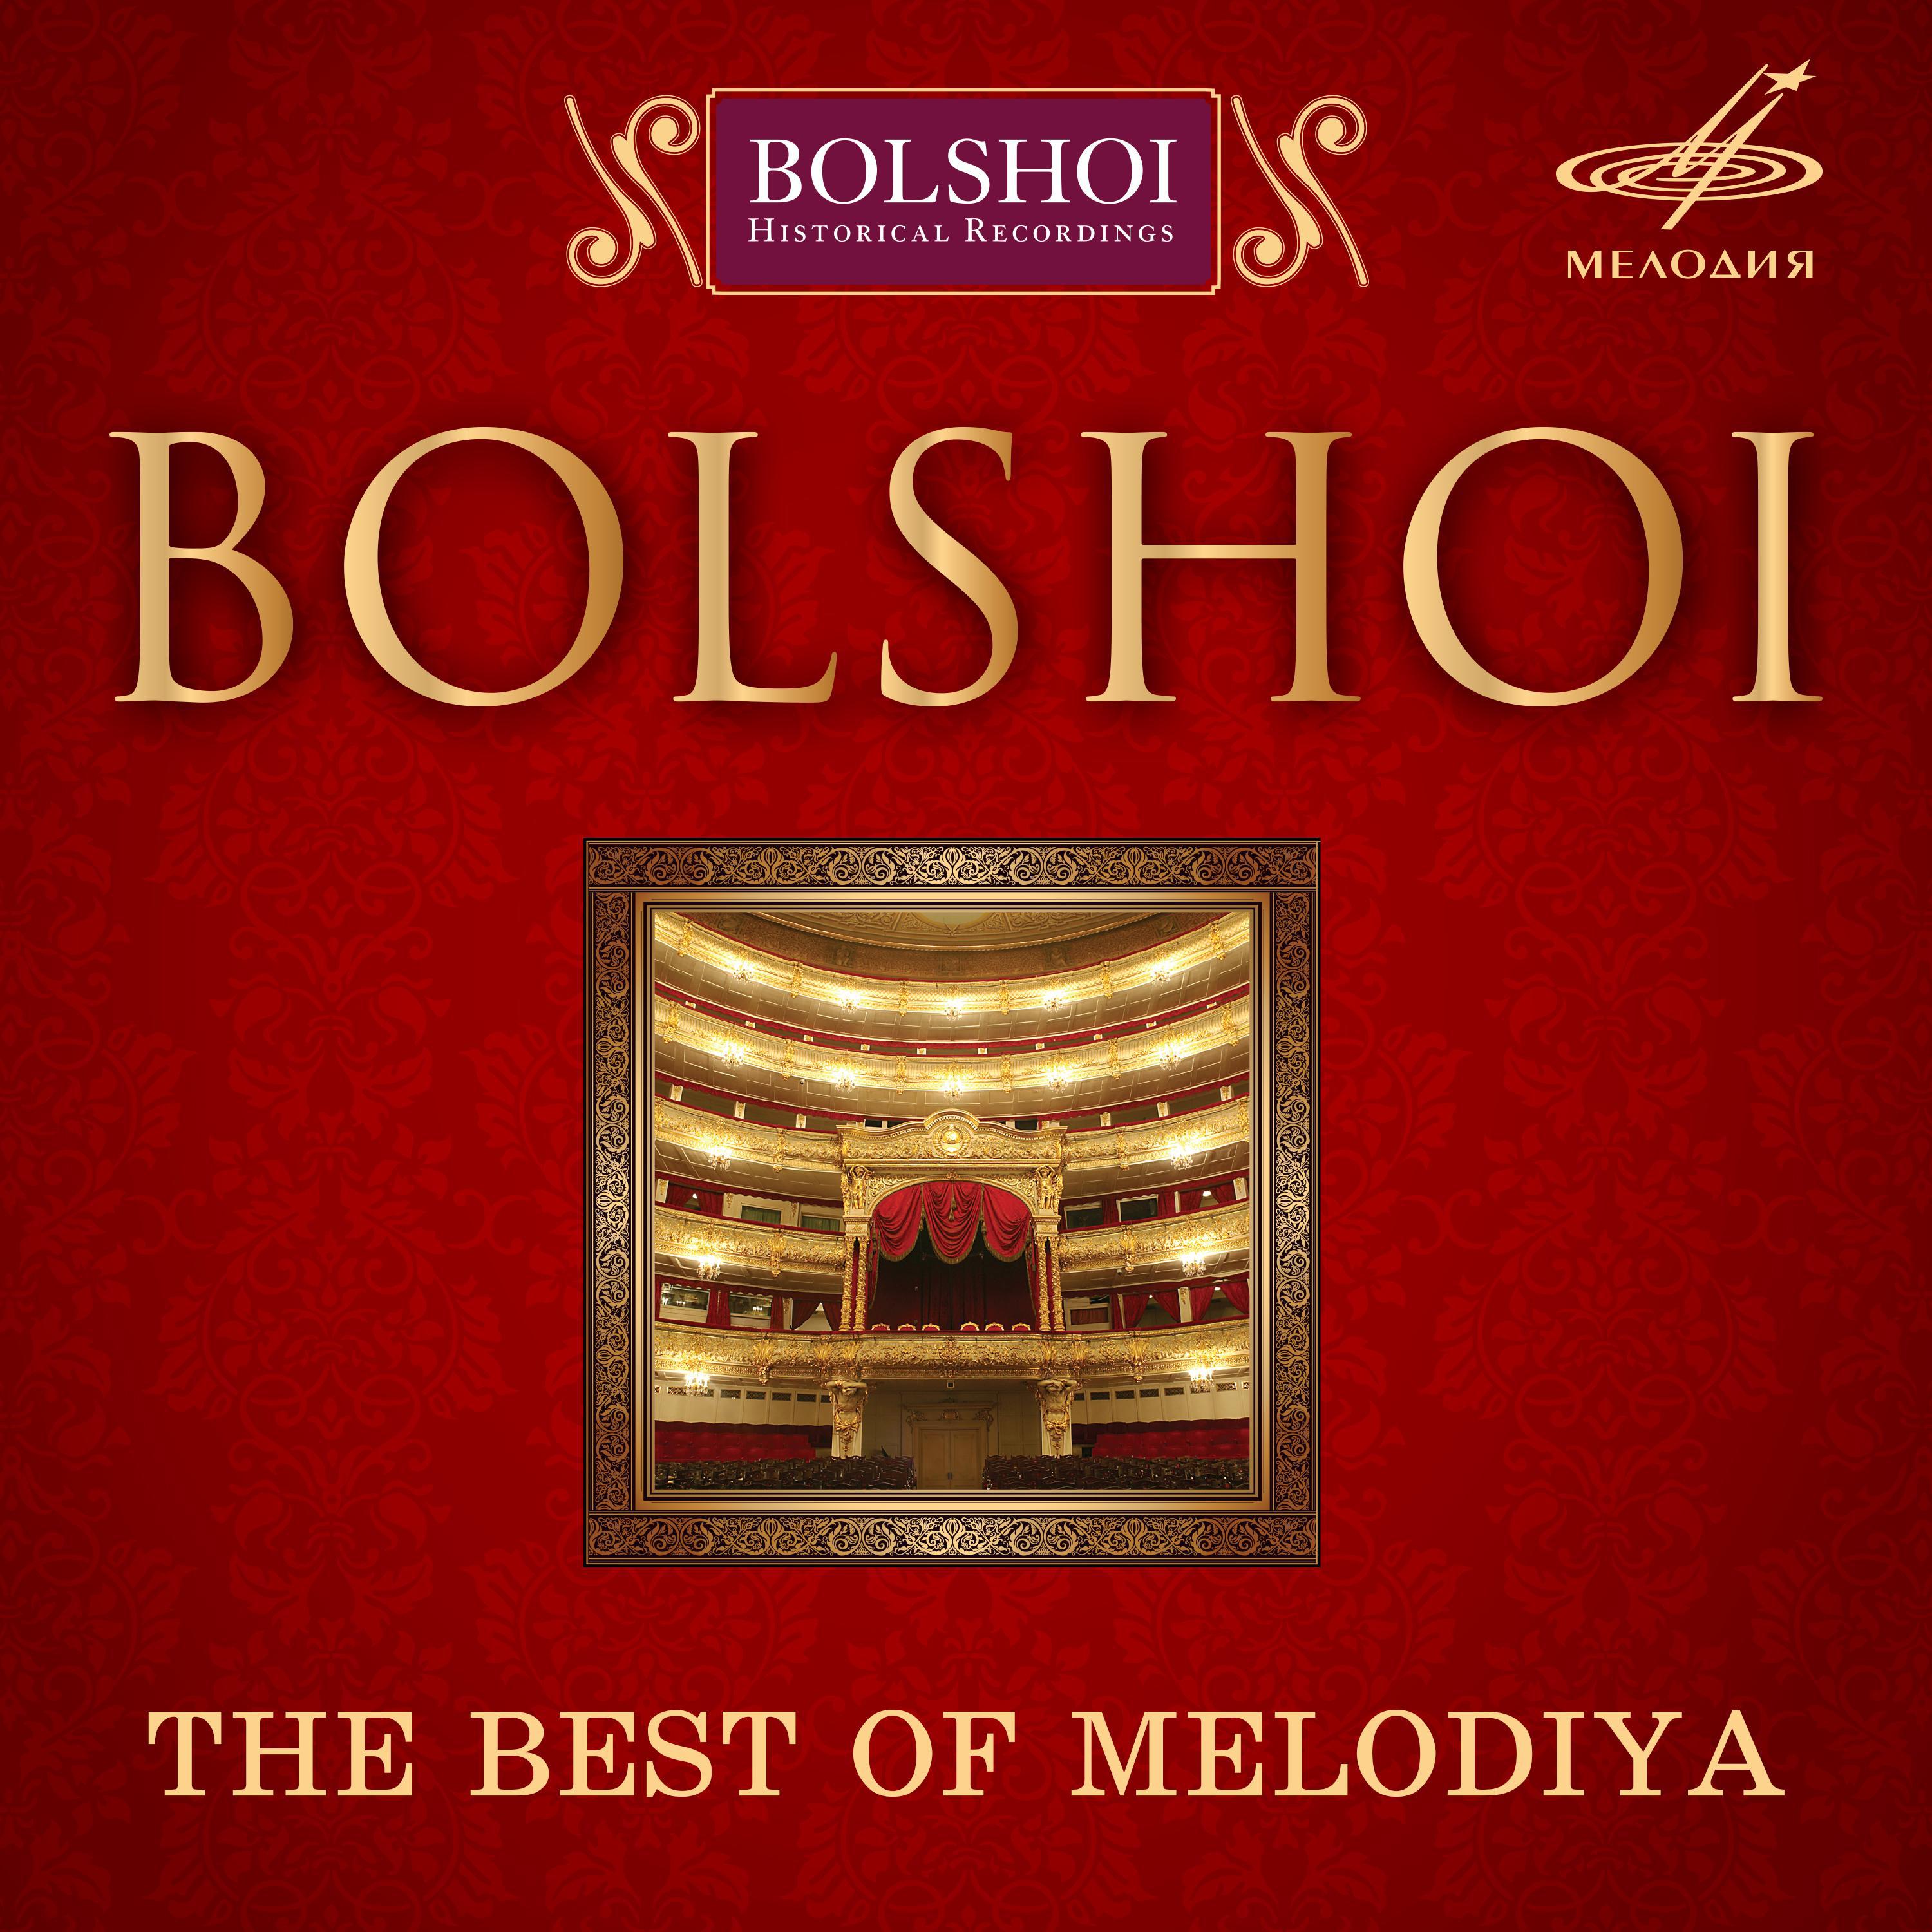 Bolshoi. The Best of Melodiya